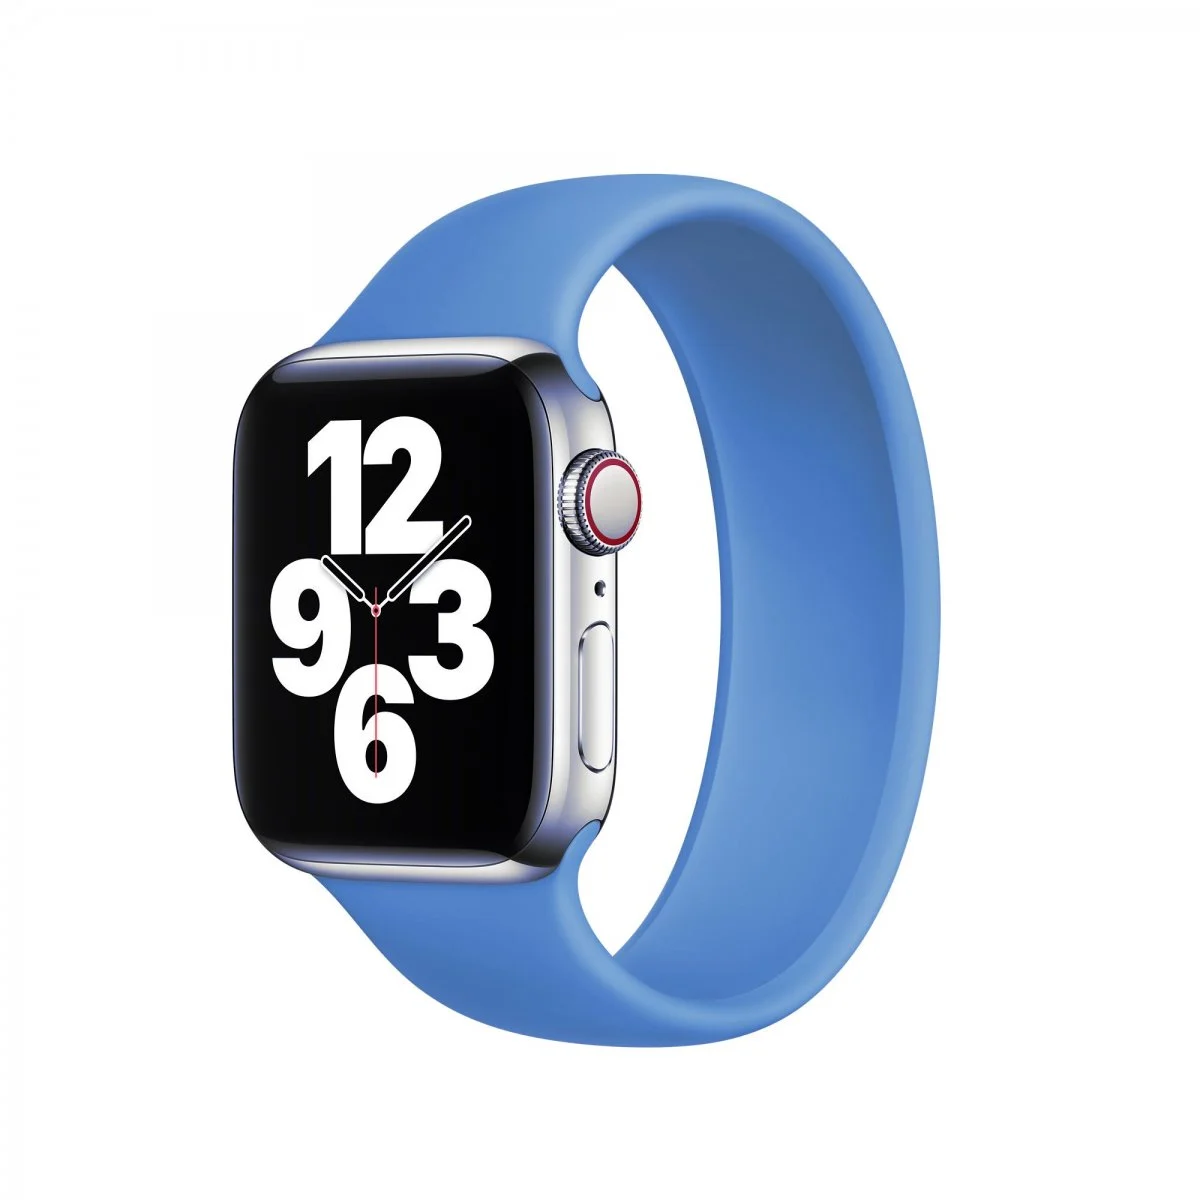 Řemínek iMore Solo Loop Apple Watch Series 1/2/3 42mm - Modrá (S)